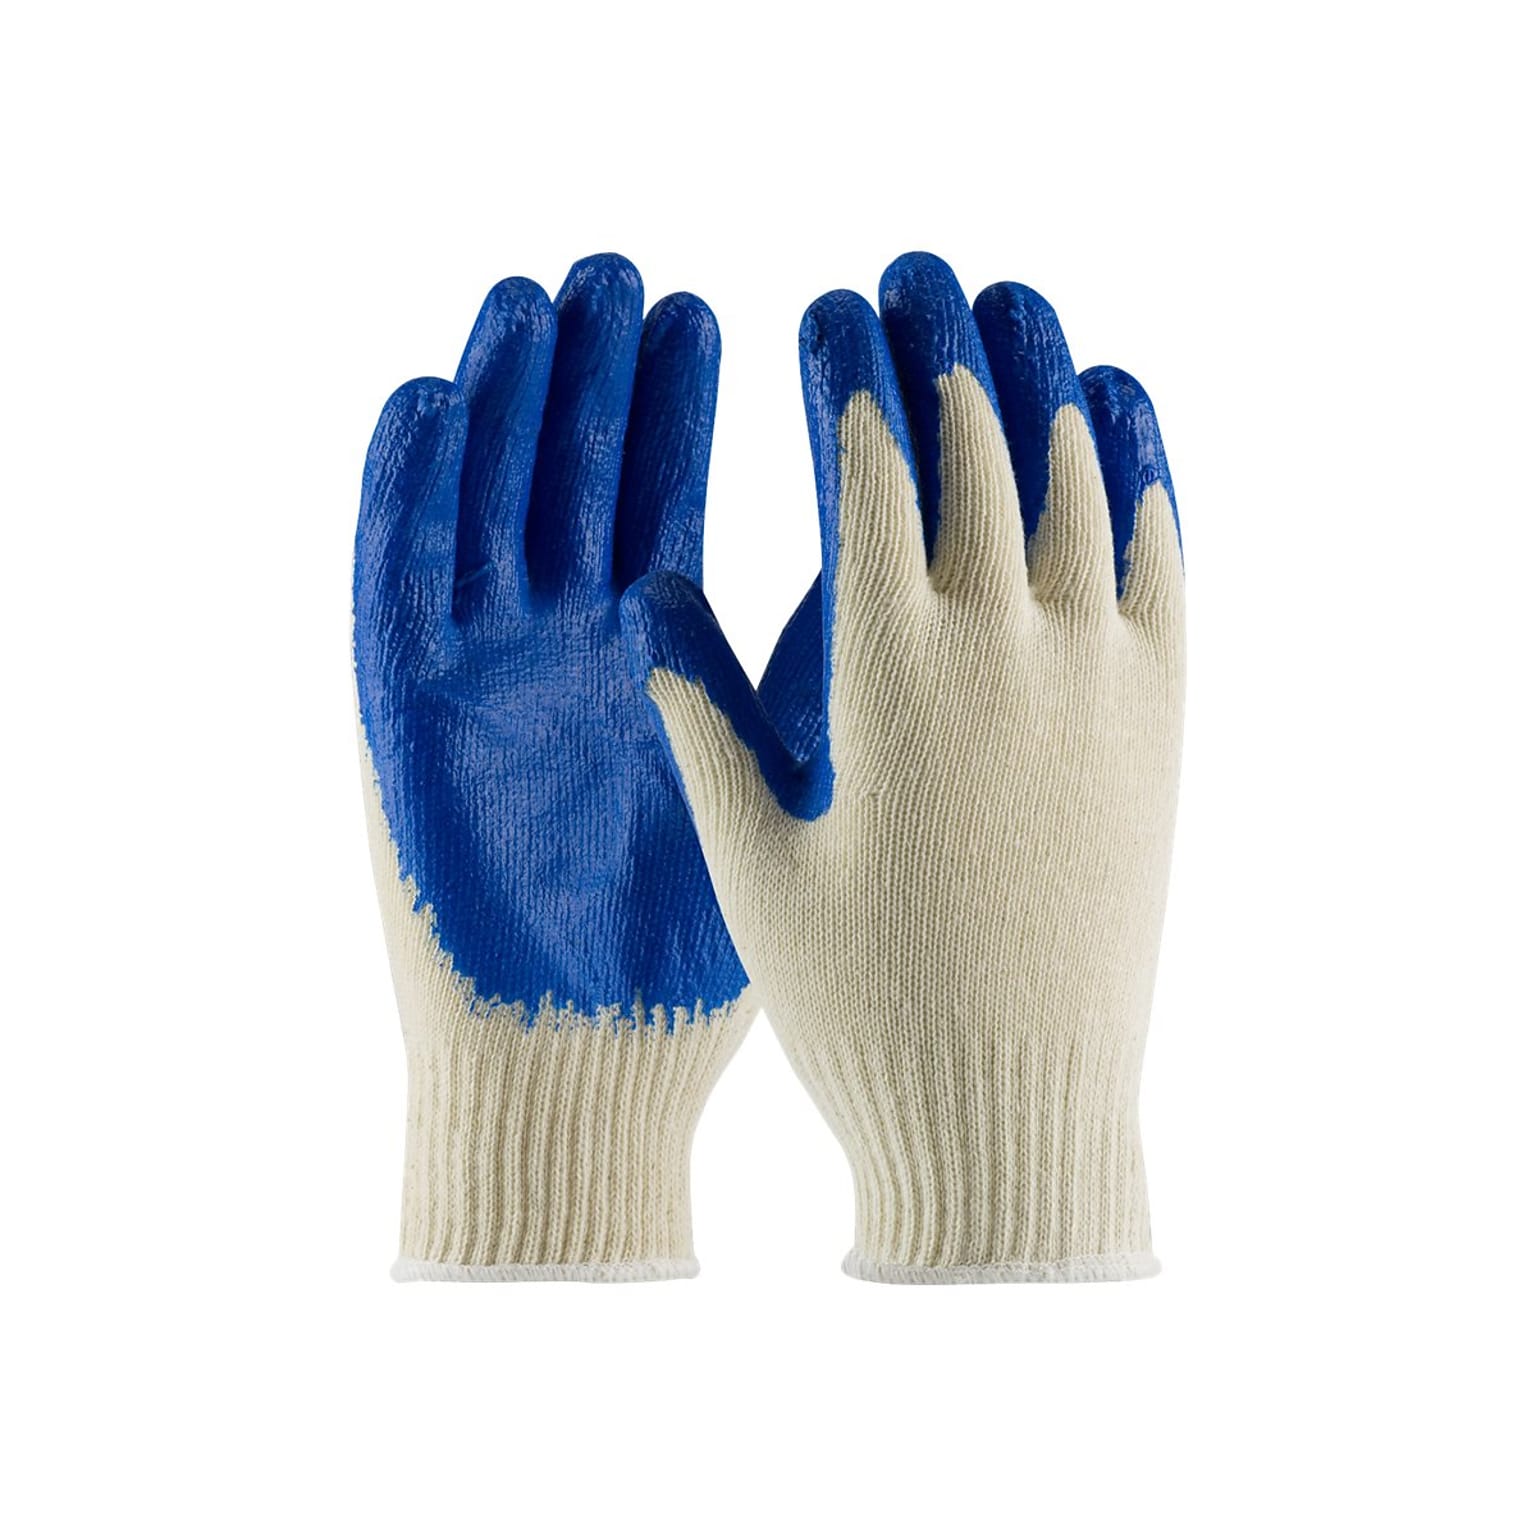 PIP Cotton/Polyester Gloves, White Dozen (39-C122/S)